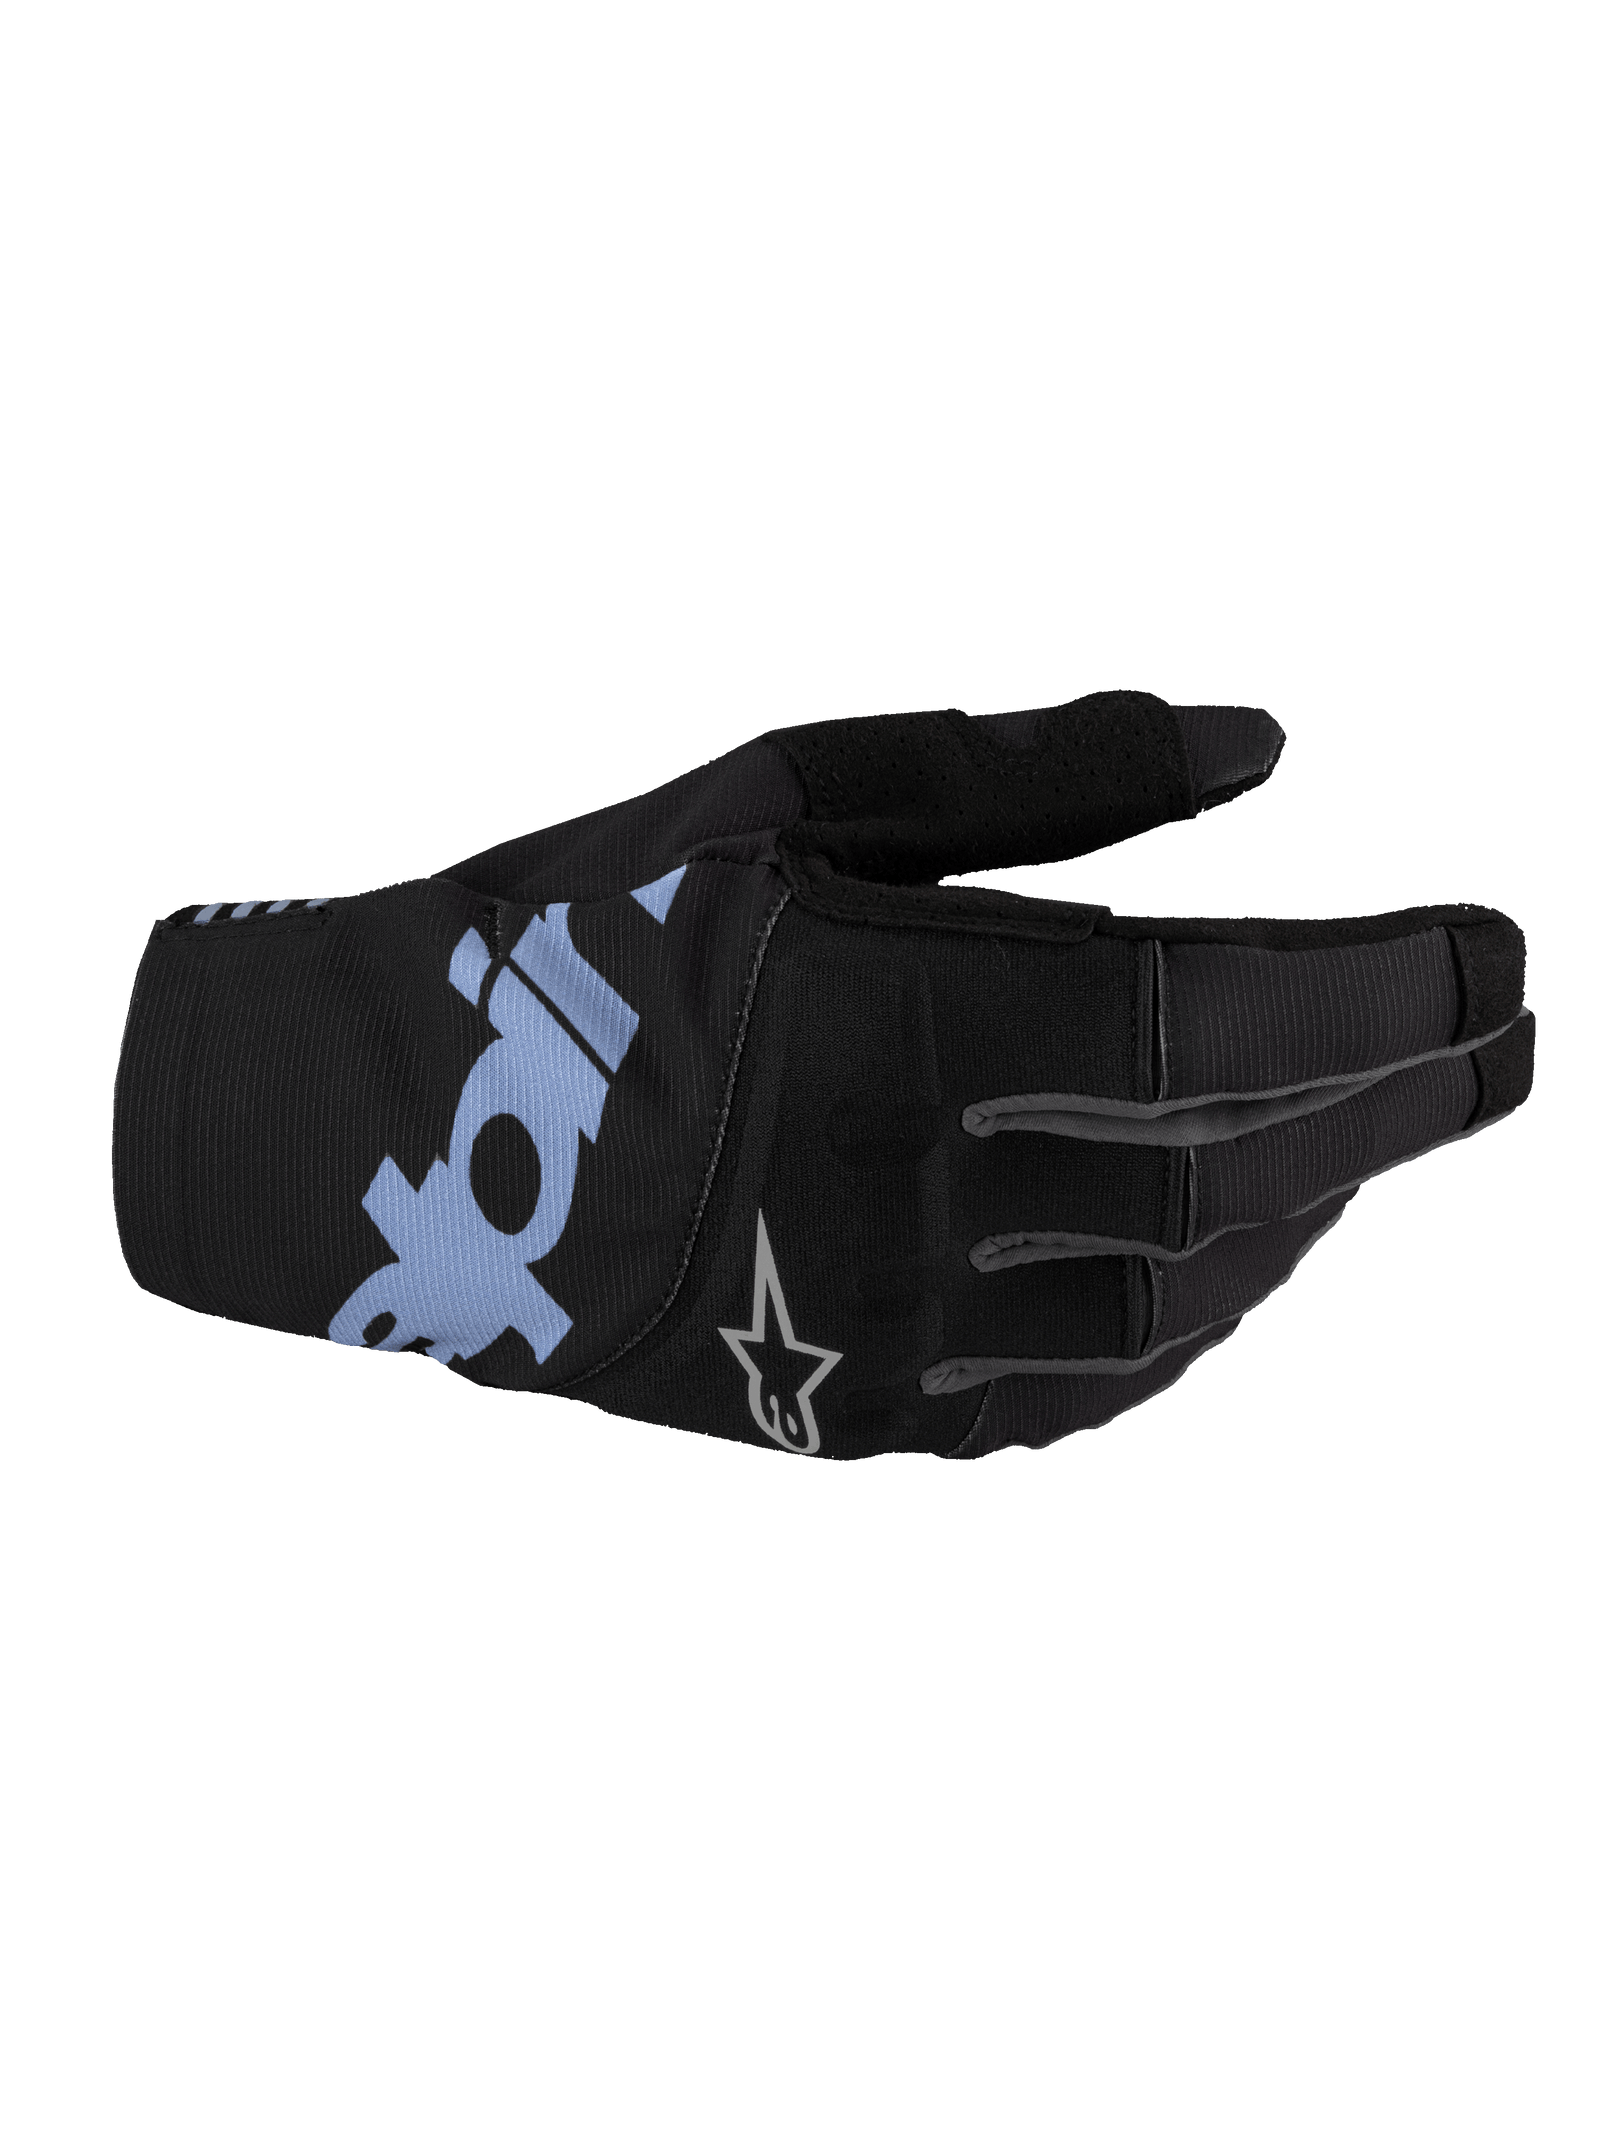 Techstar Handschuhe